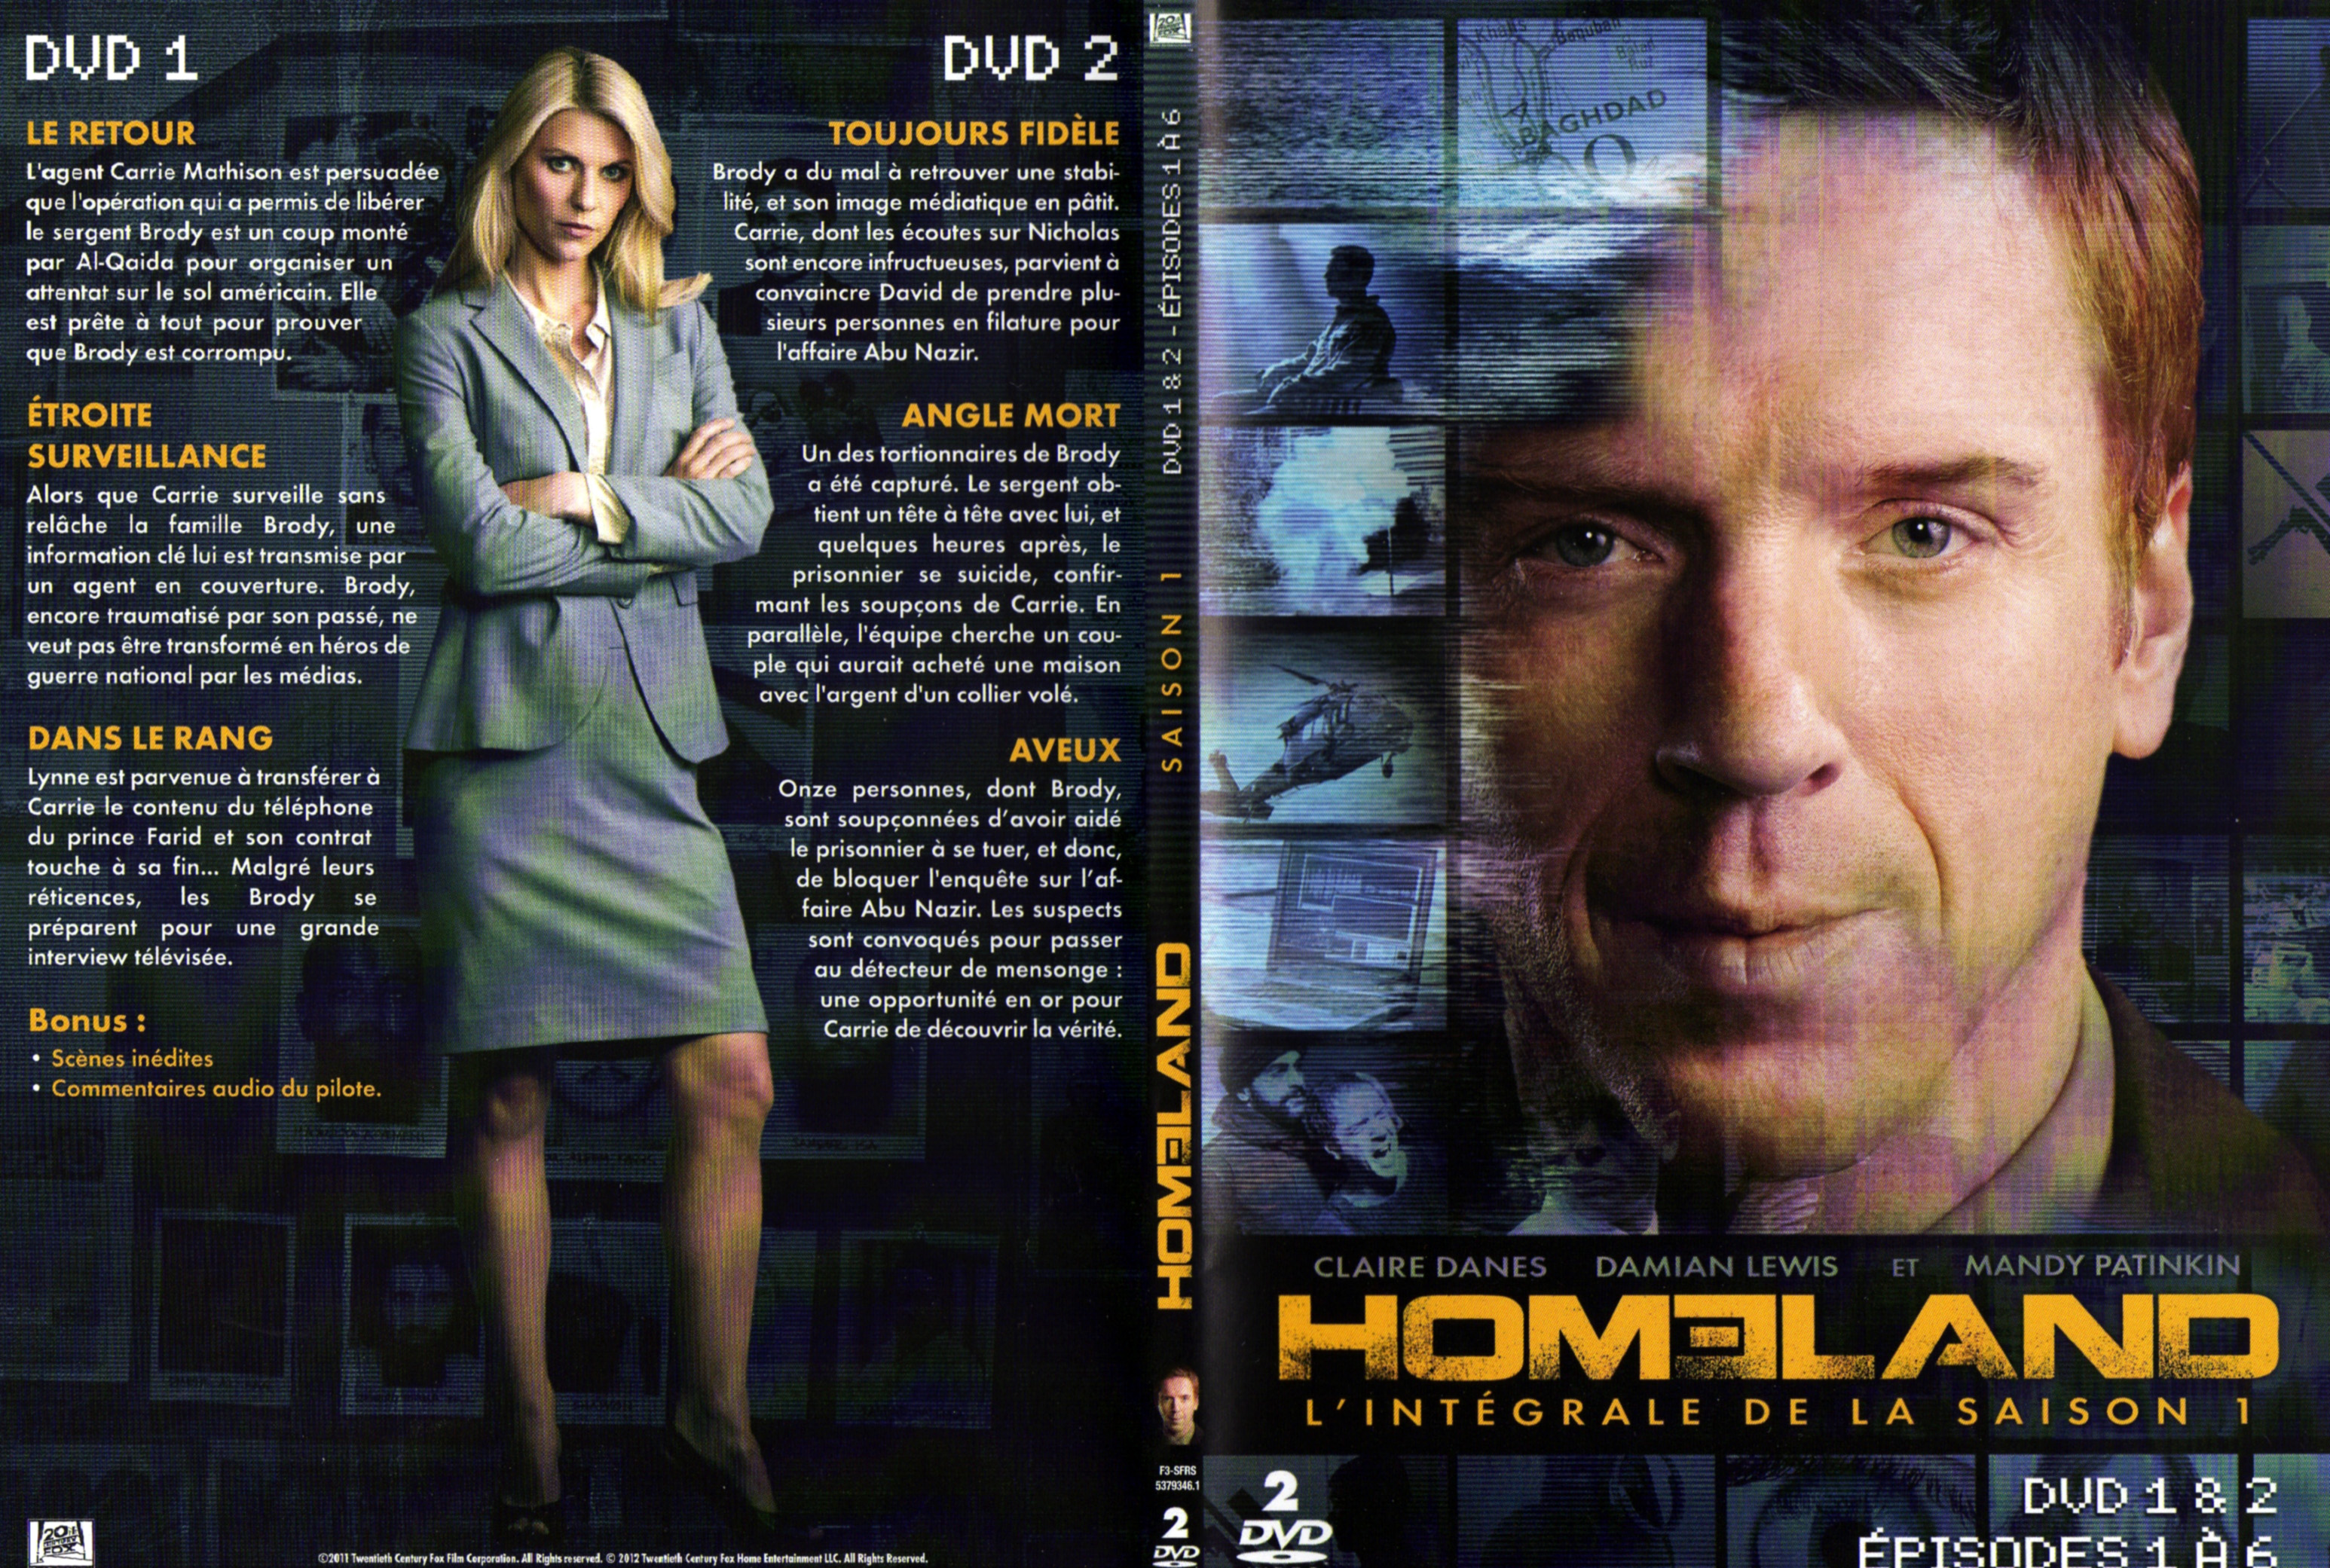 Jaquette DVD Homeland Saison 1 DVD 1